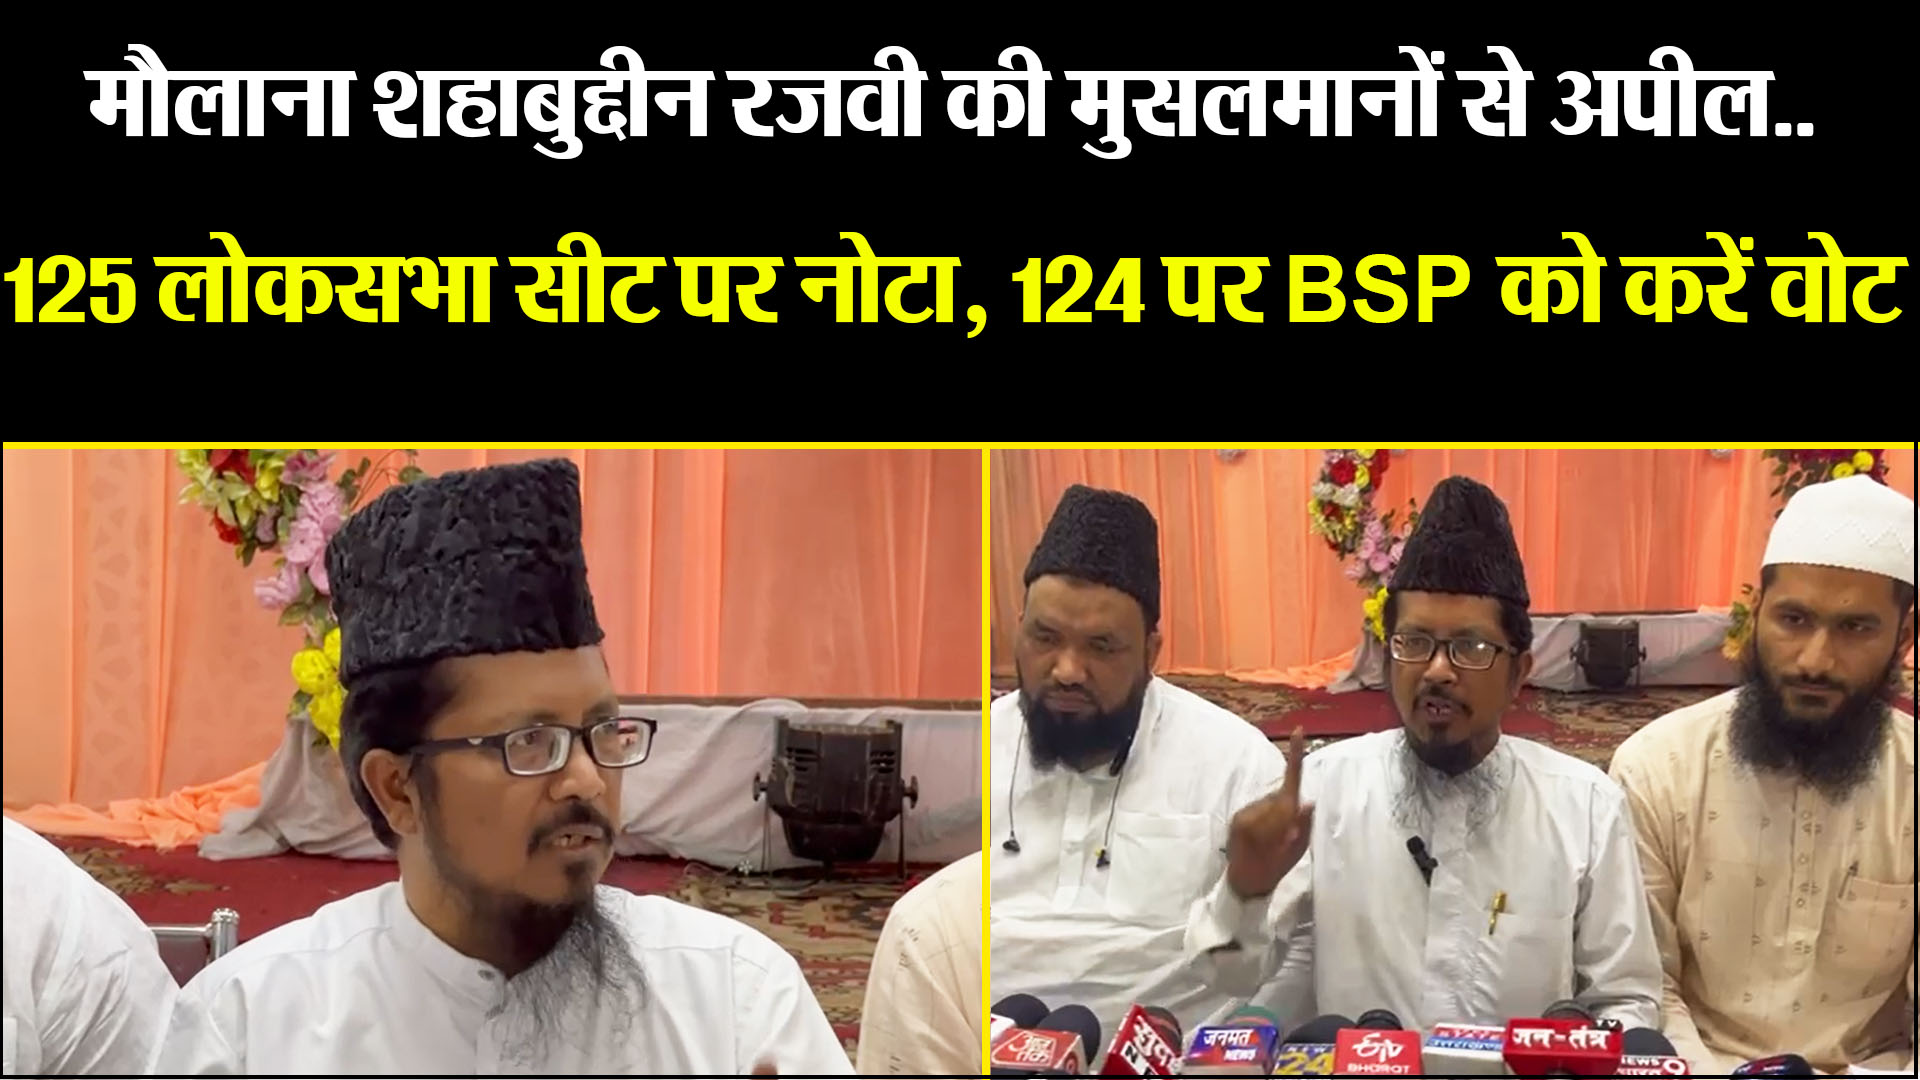 बरेली: मौलाना शहाबुद्दीन रजवी की मुसलमानों से अपील.. 125 लोकसभा सीट पर नोटा, 124 पर BSP को करें वोट